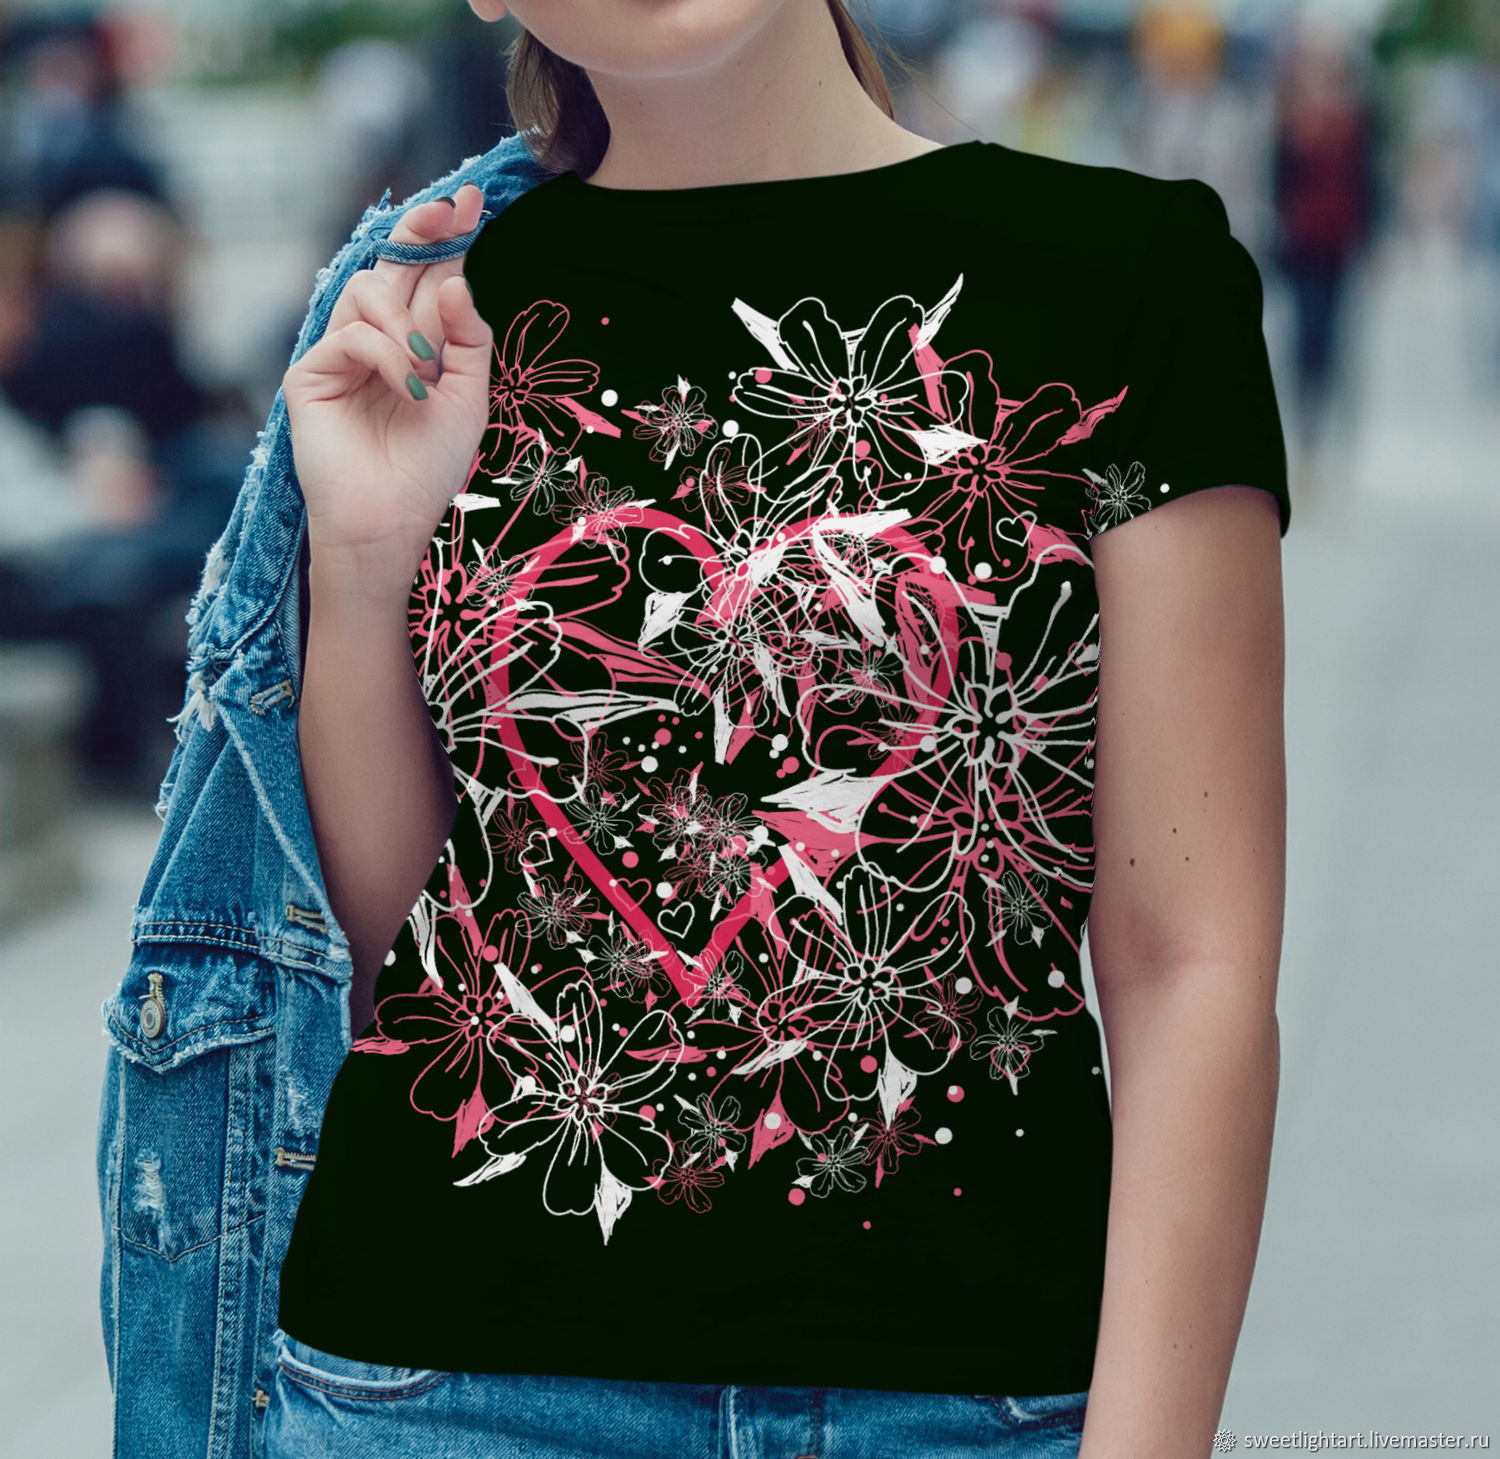 Женская футболка Цветущее Сердце, Футболки, Ставрополь,  Фото №1